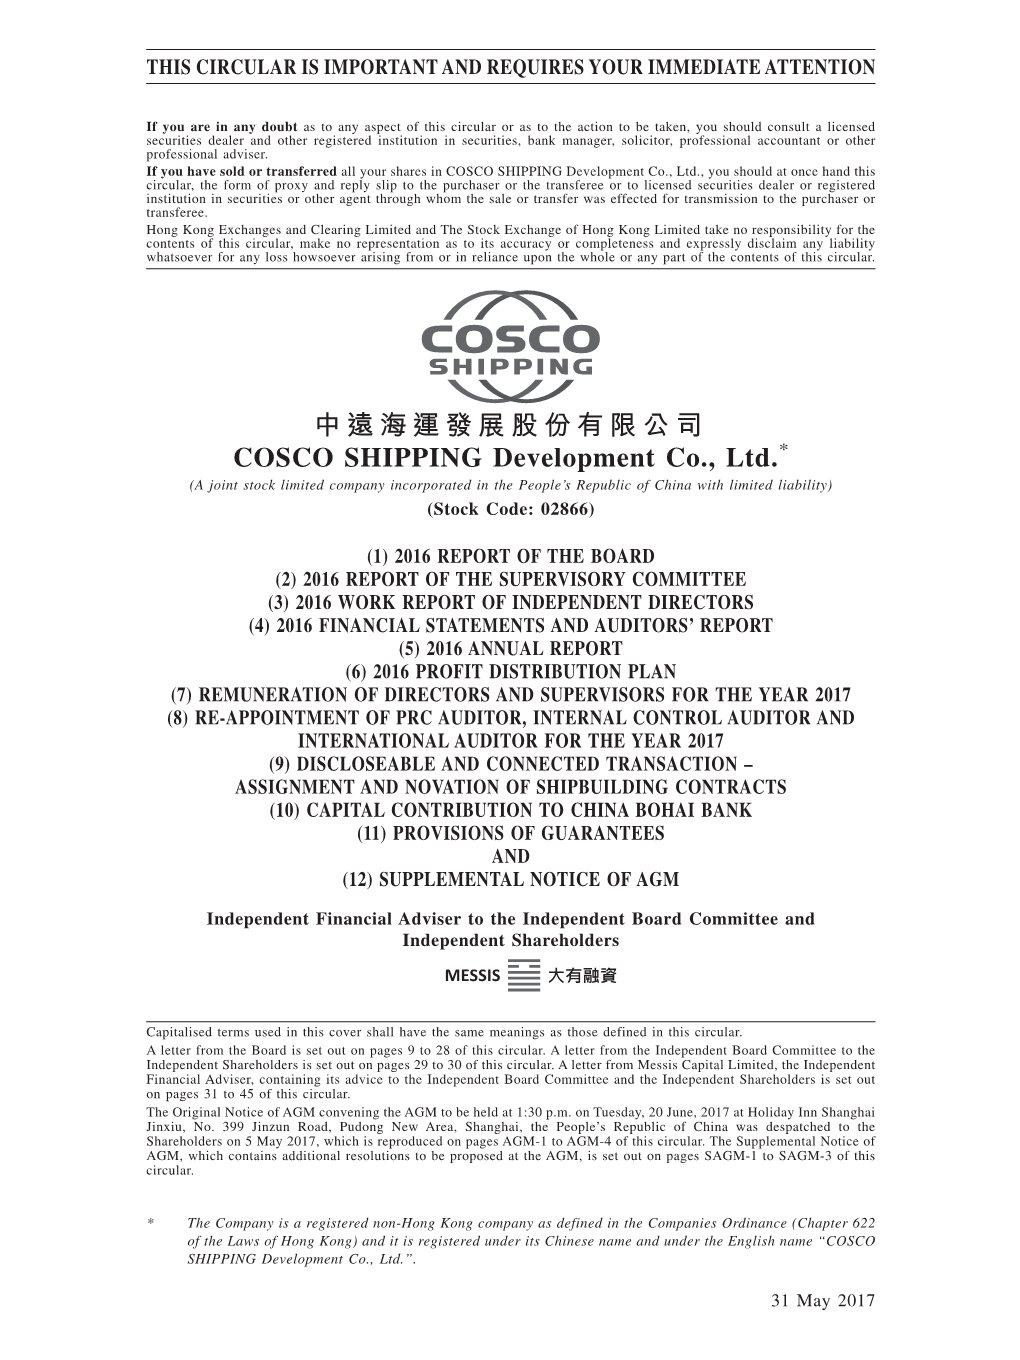 中遠海運發展股份有限公司 COSCO SHIPPING Development Co., Ltd.*